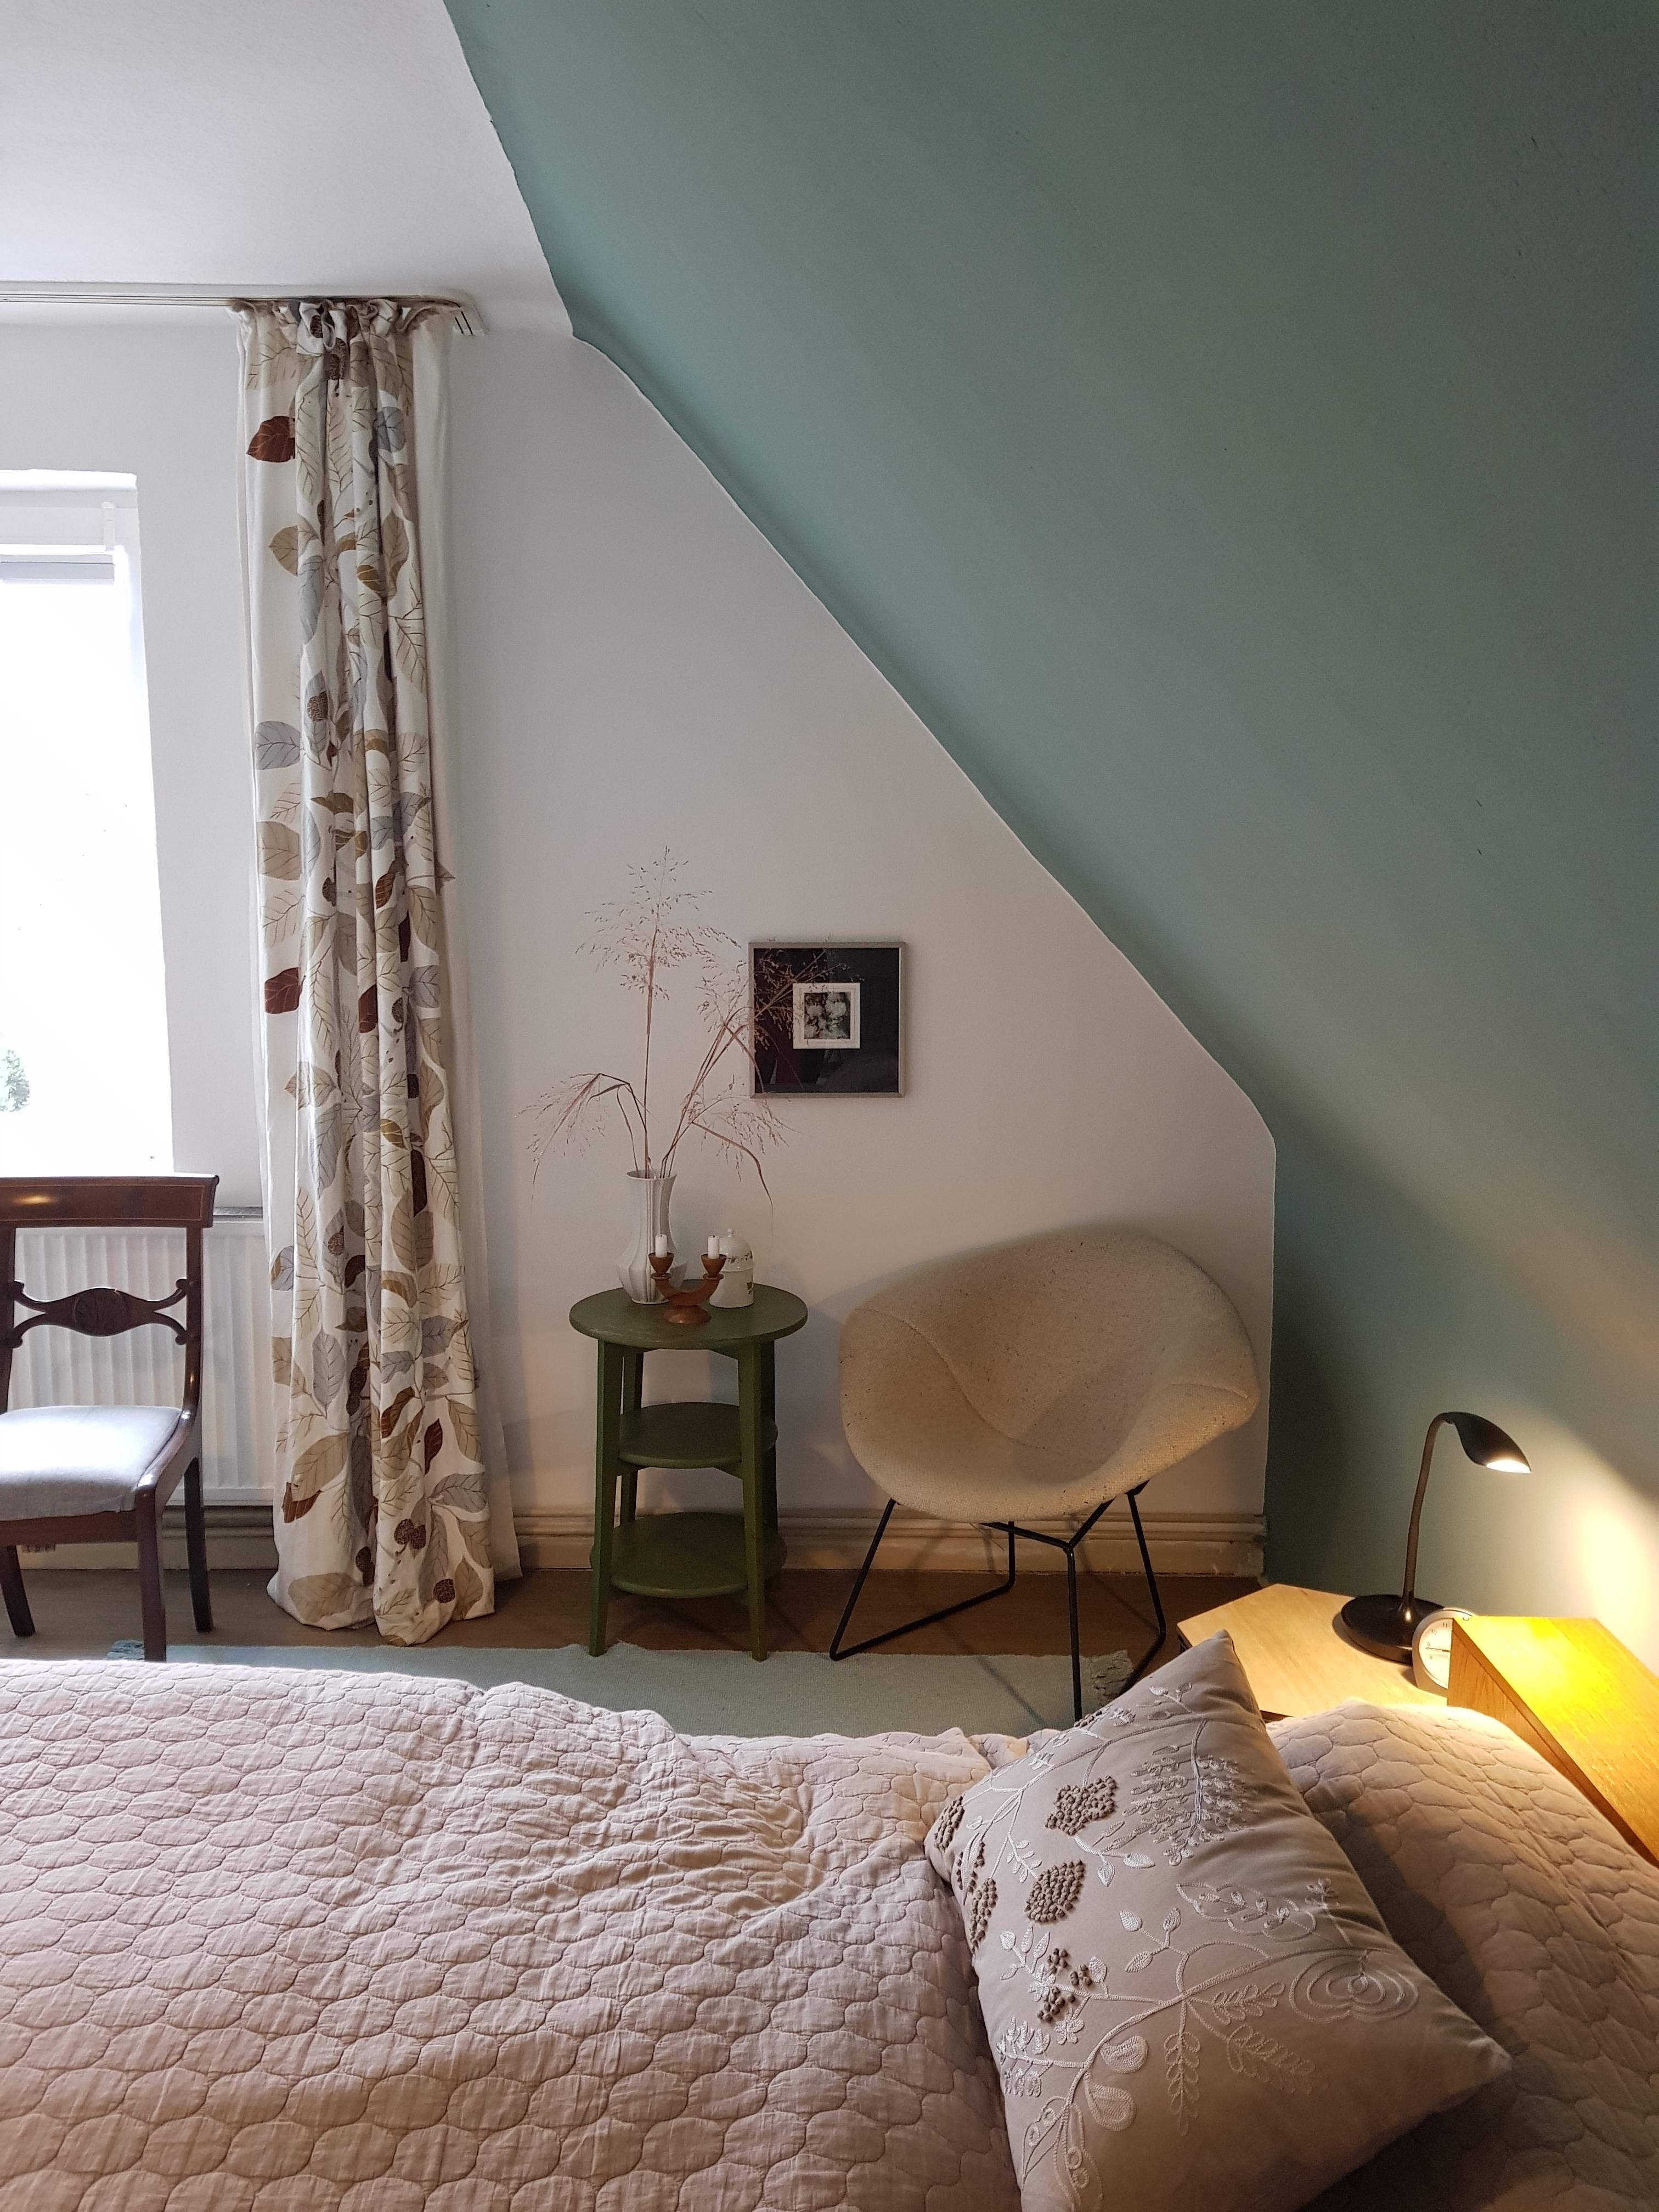 Neue Farbe an der Wand.. #schlafzimmer #wandfarbe #dachschräge #erhabenesagavengrün